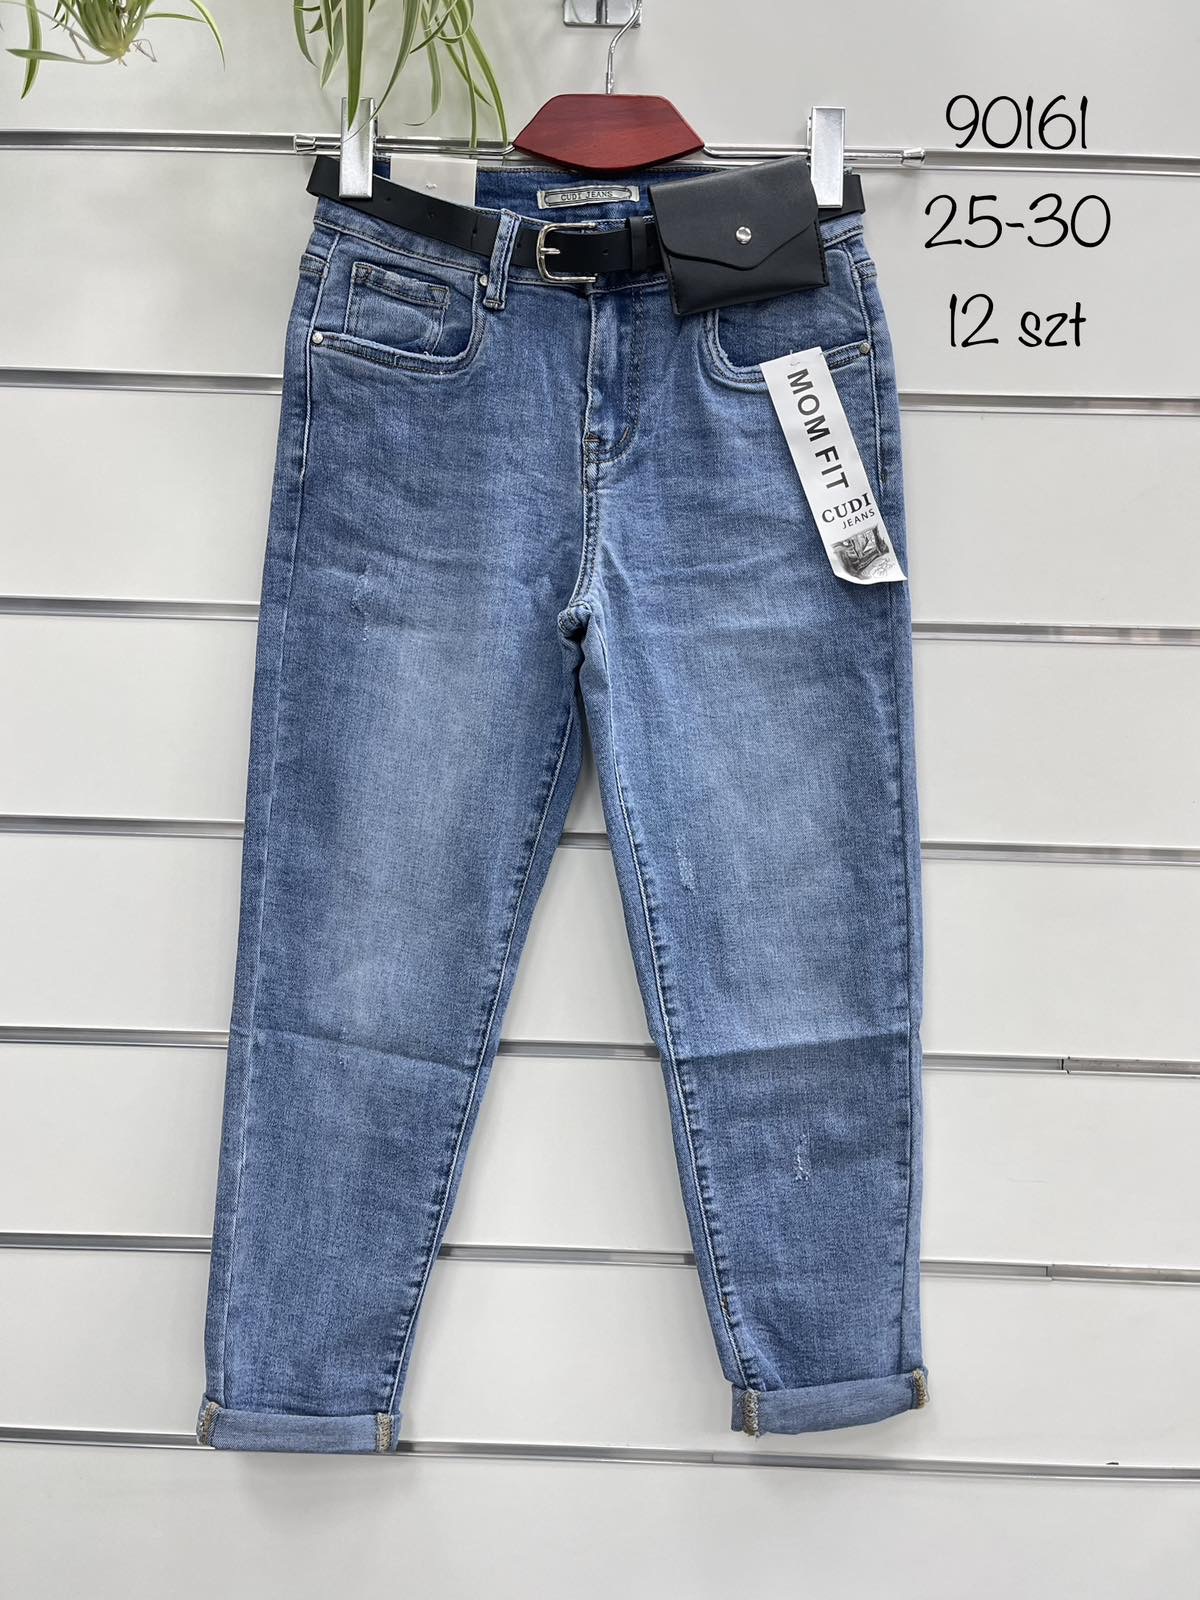 Spodnie  damskie jeans roz 25-30. Paczka 12 szt